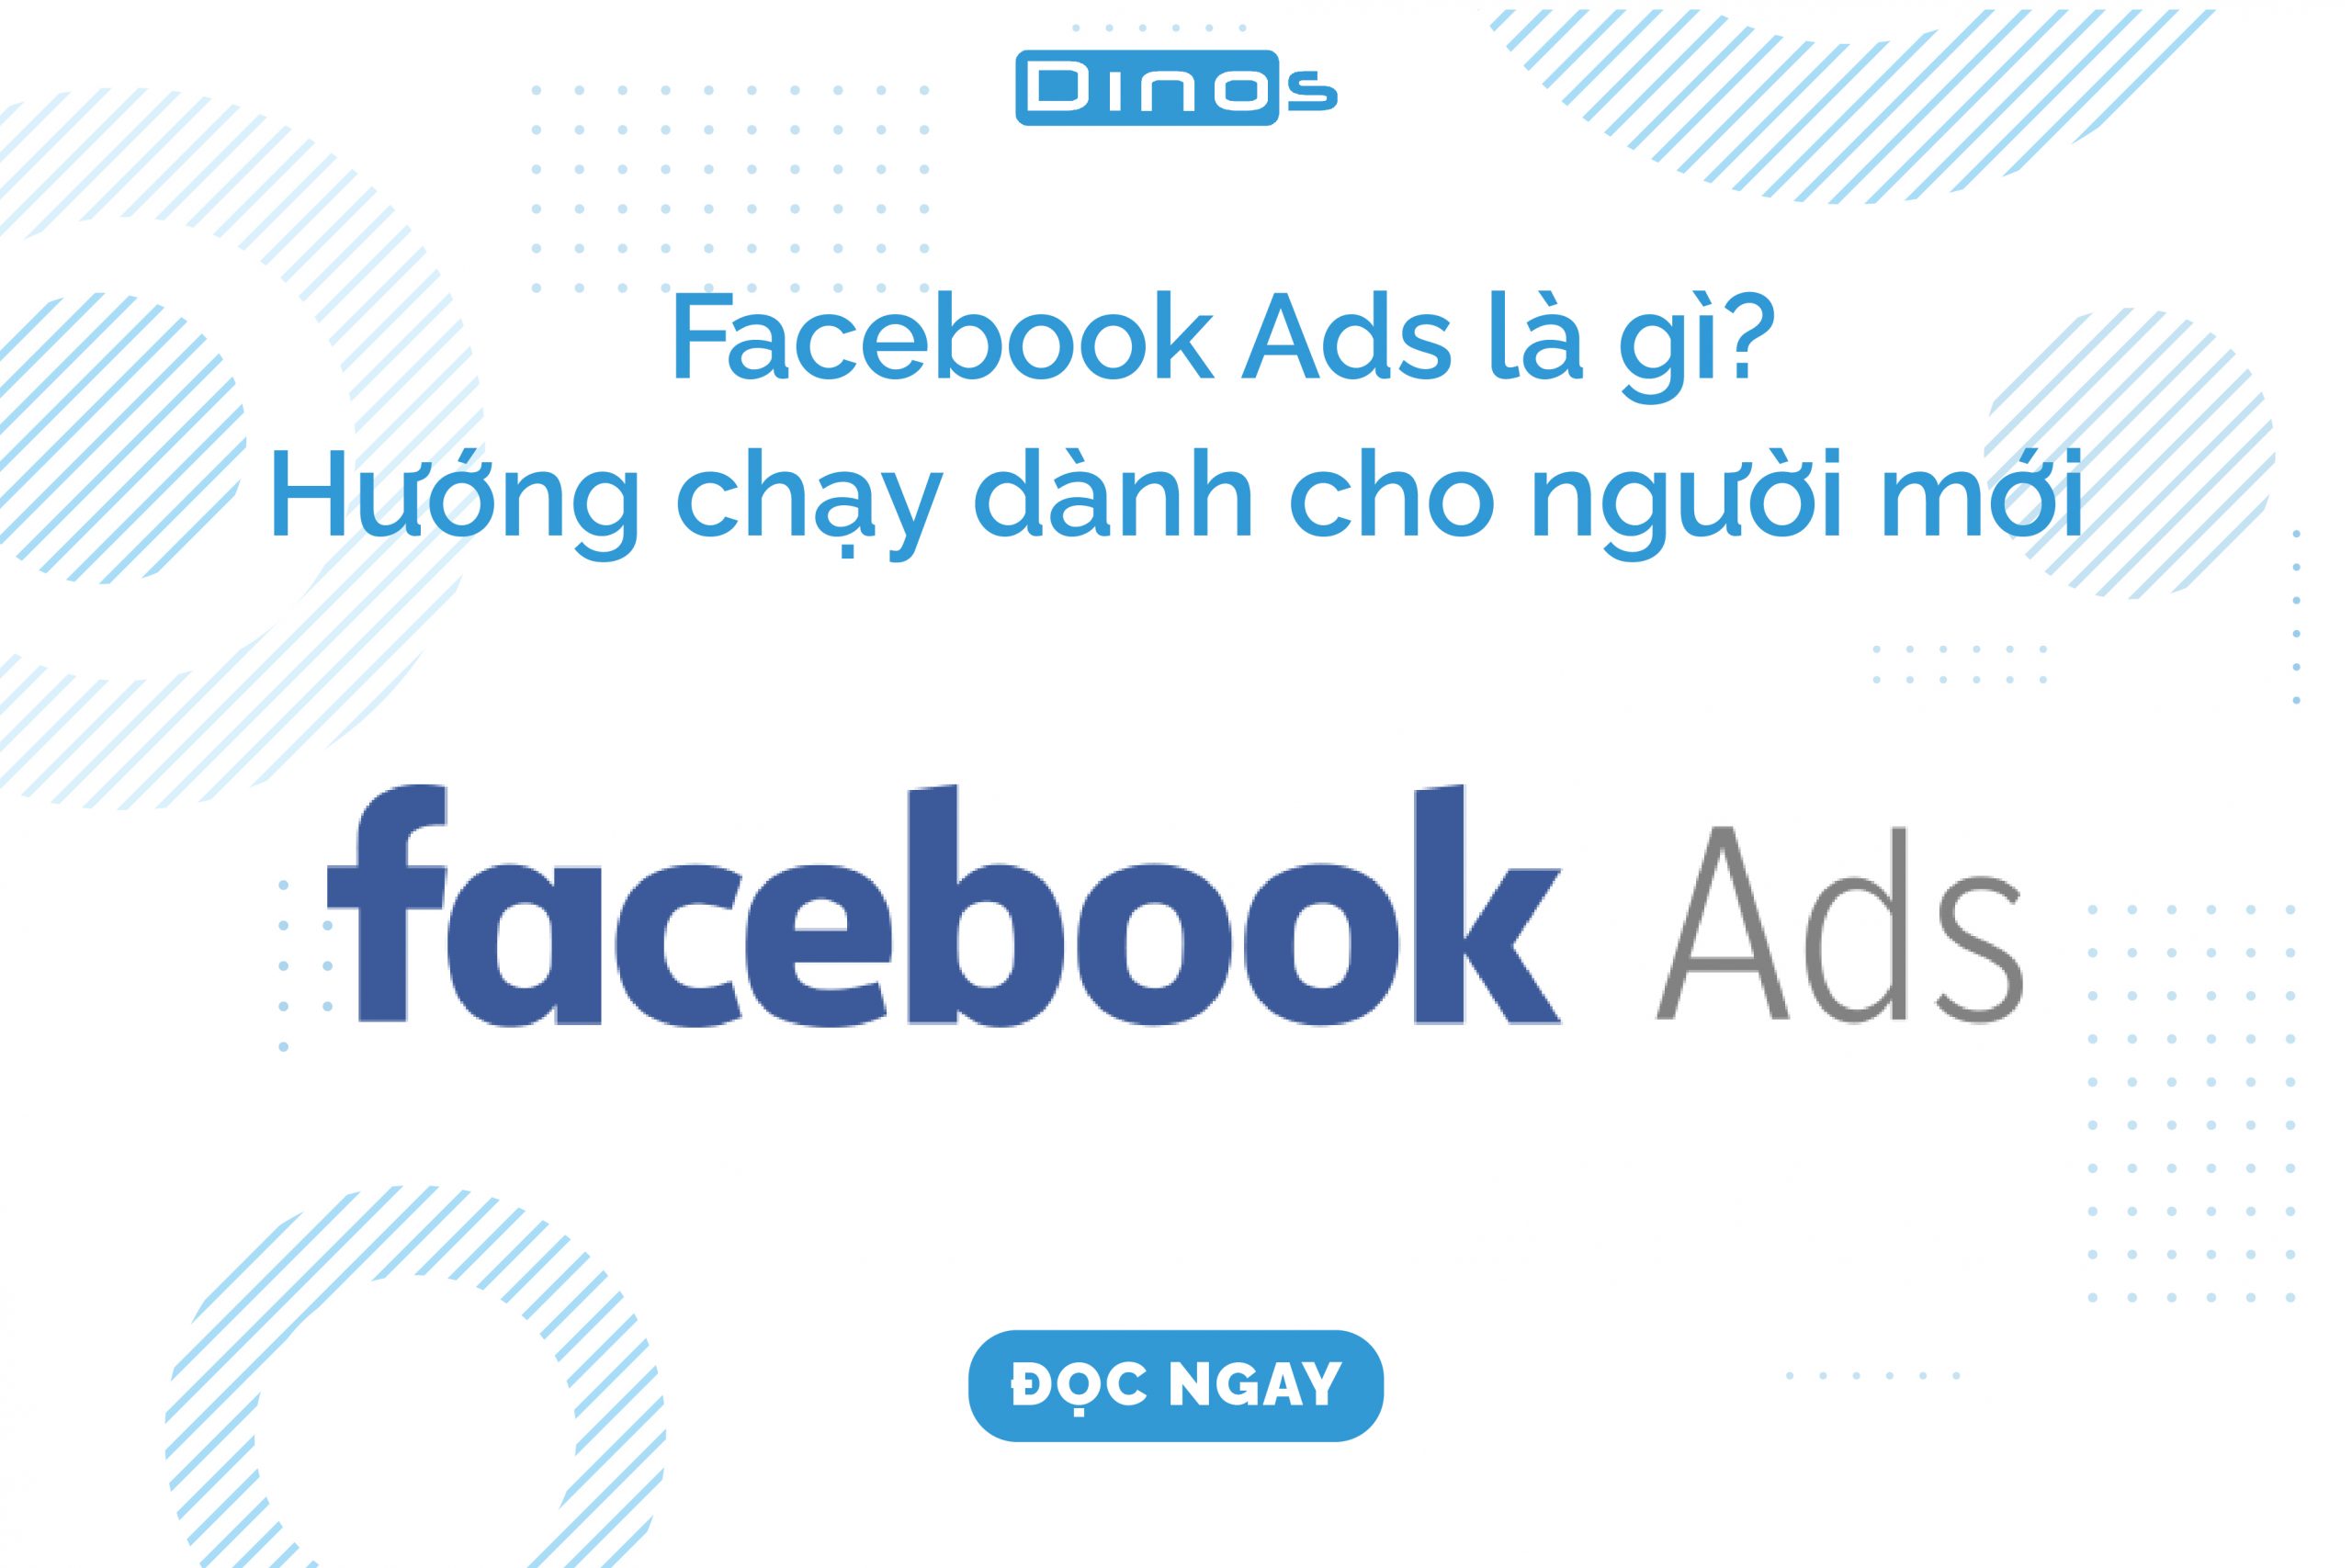 Facebook Ads là gì?